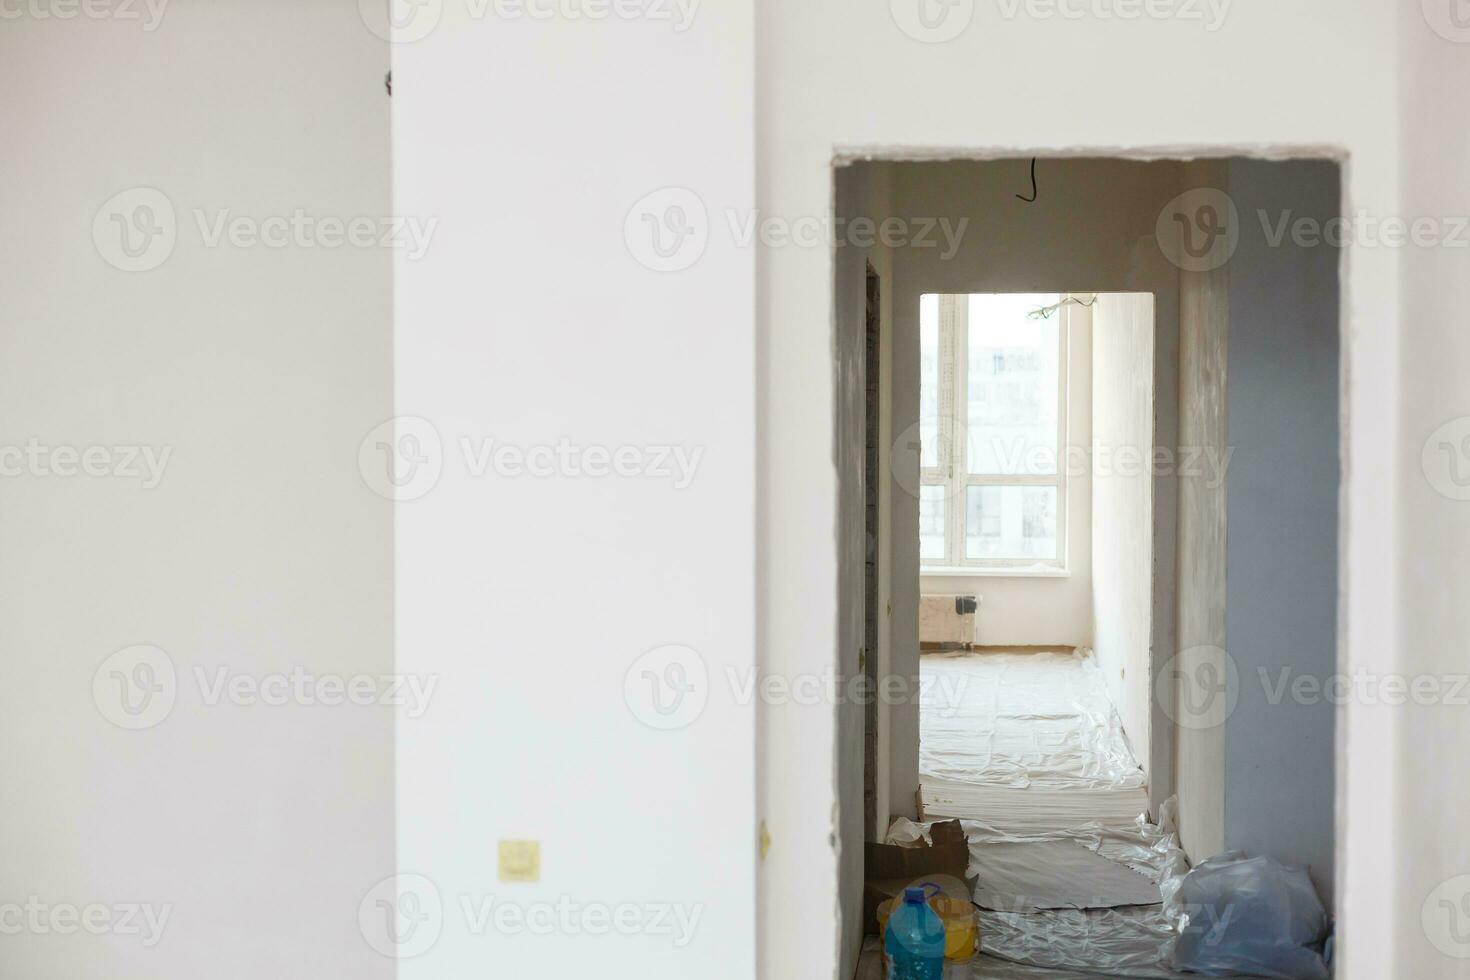 pré-visualização apartamento Onde renovações estão levando Lugar, colocar com a em processamento do todos superfícies foto